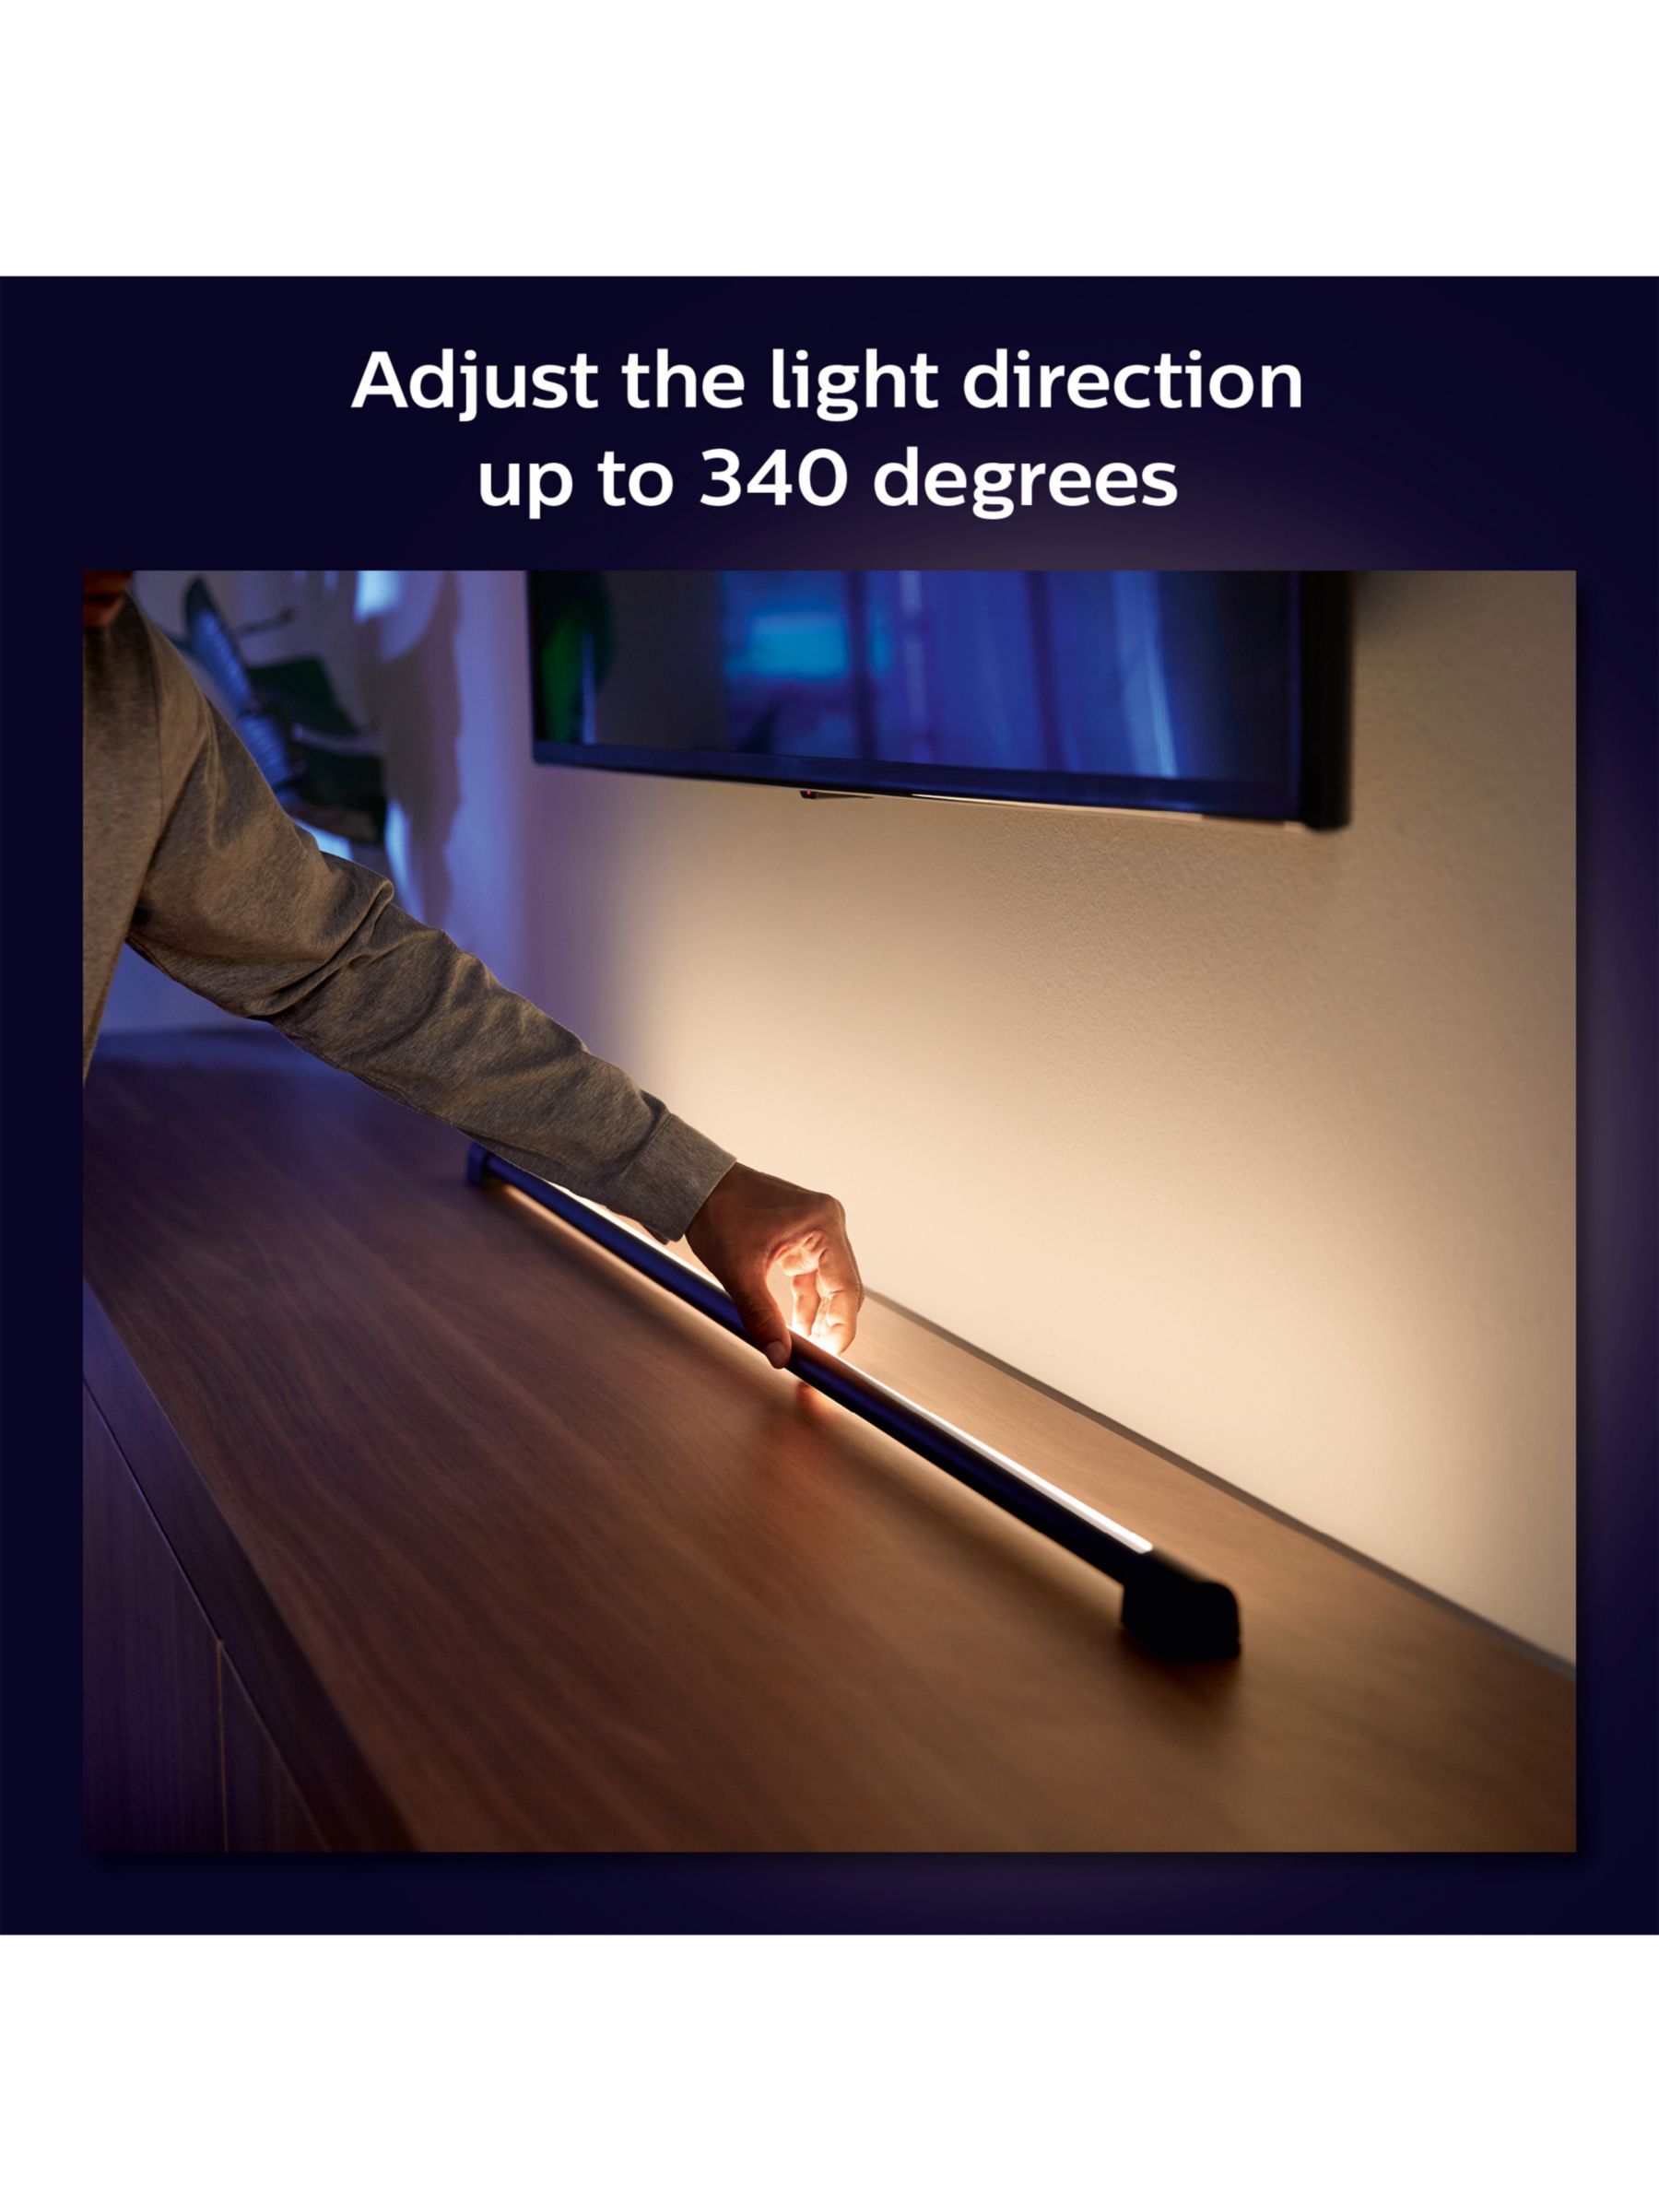 Ánh sáng lôi cuốn của Philips Hue Play Gradient chắc chắn sẽ khiến bạn trầm trồ kinh ngạc, và muốn nắm tay chiếc remote để trở thành nhà thiết kế ánh sáng của riêng mình.